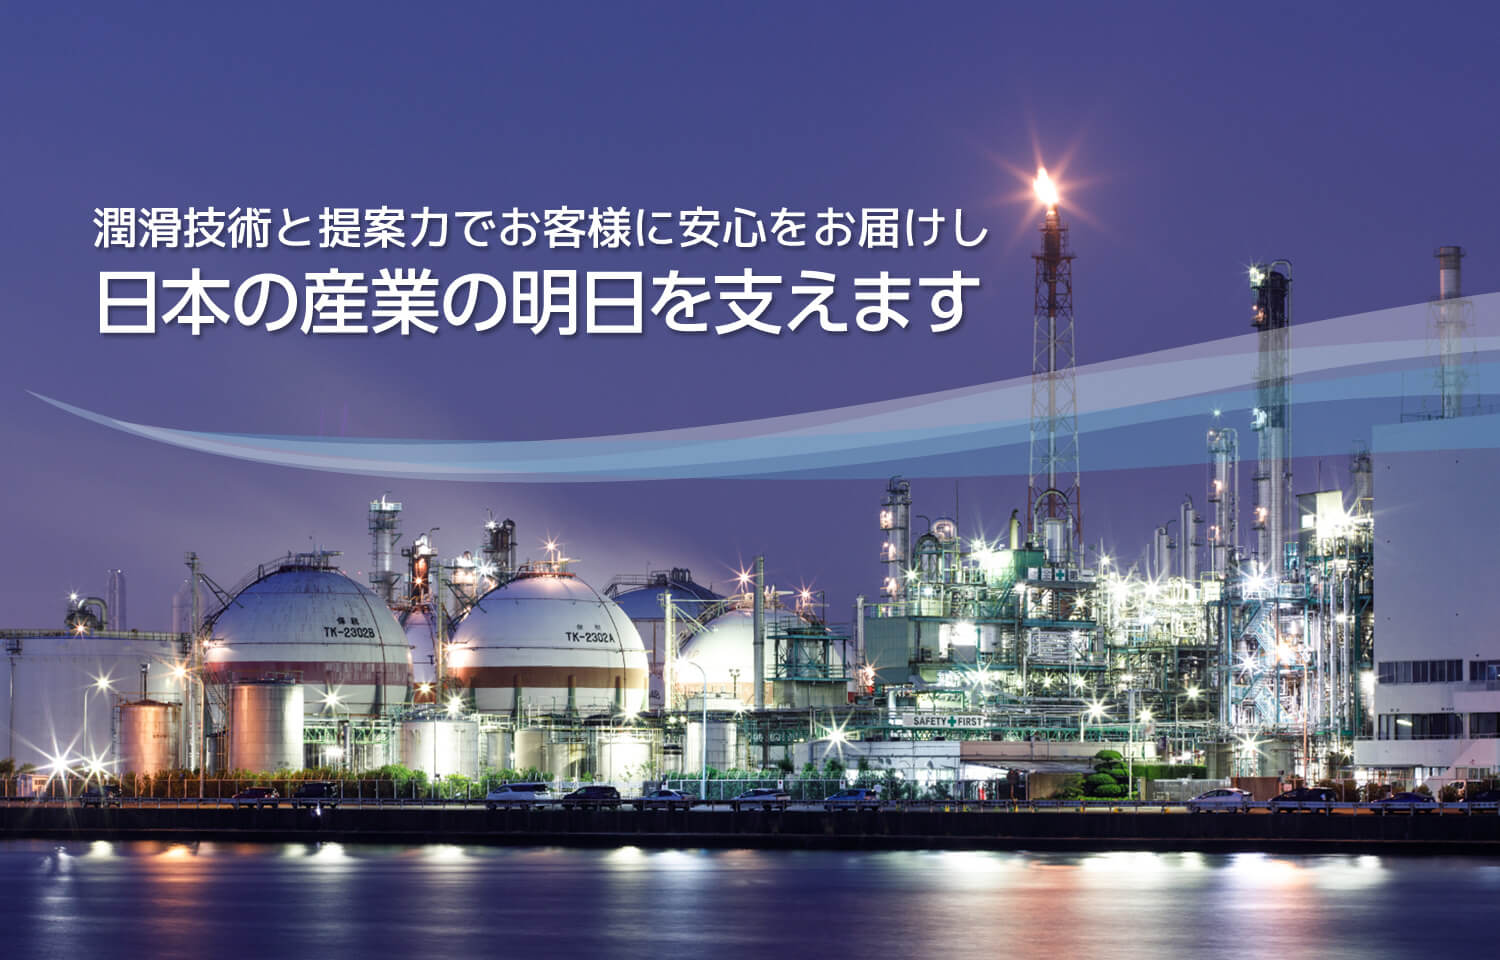 潤滑技術と提案力でお客様に安心をお届けし日本の産業の明日を支えます